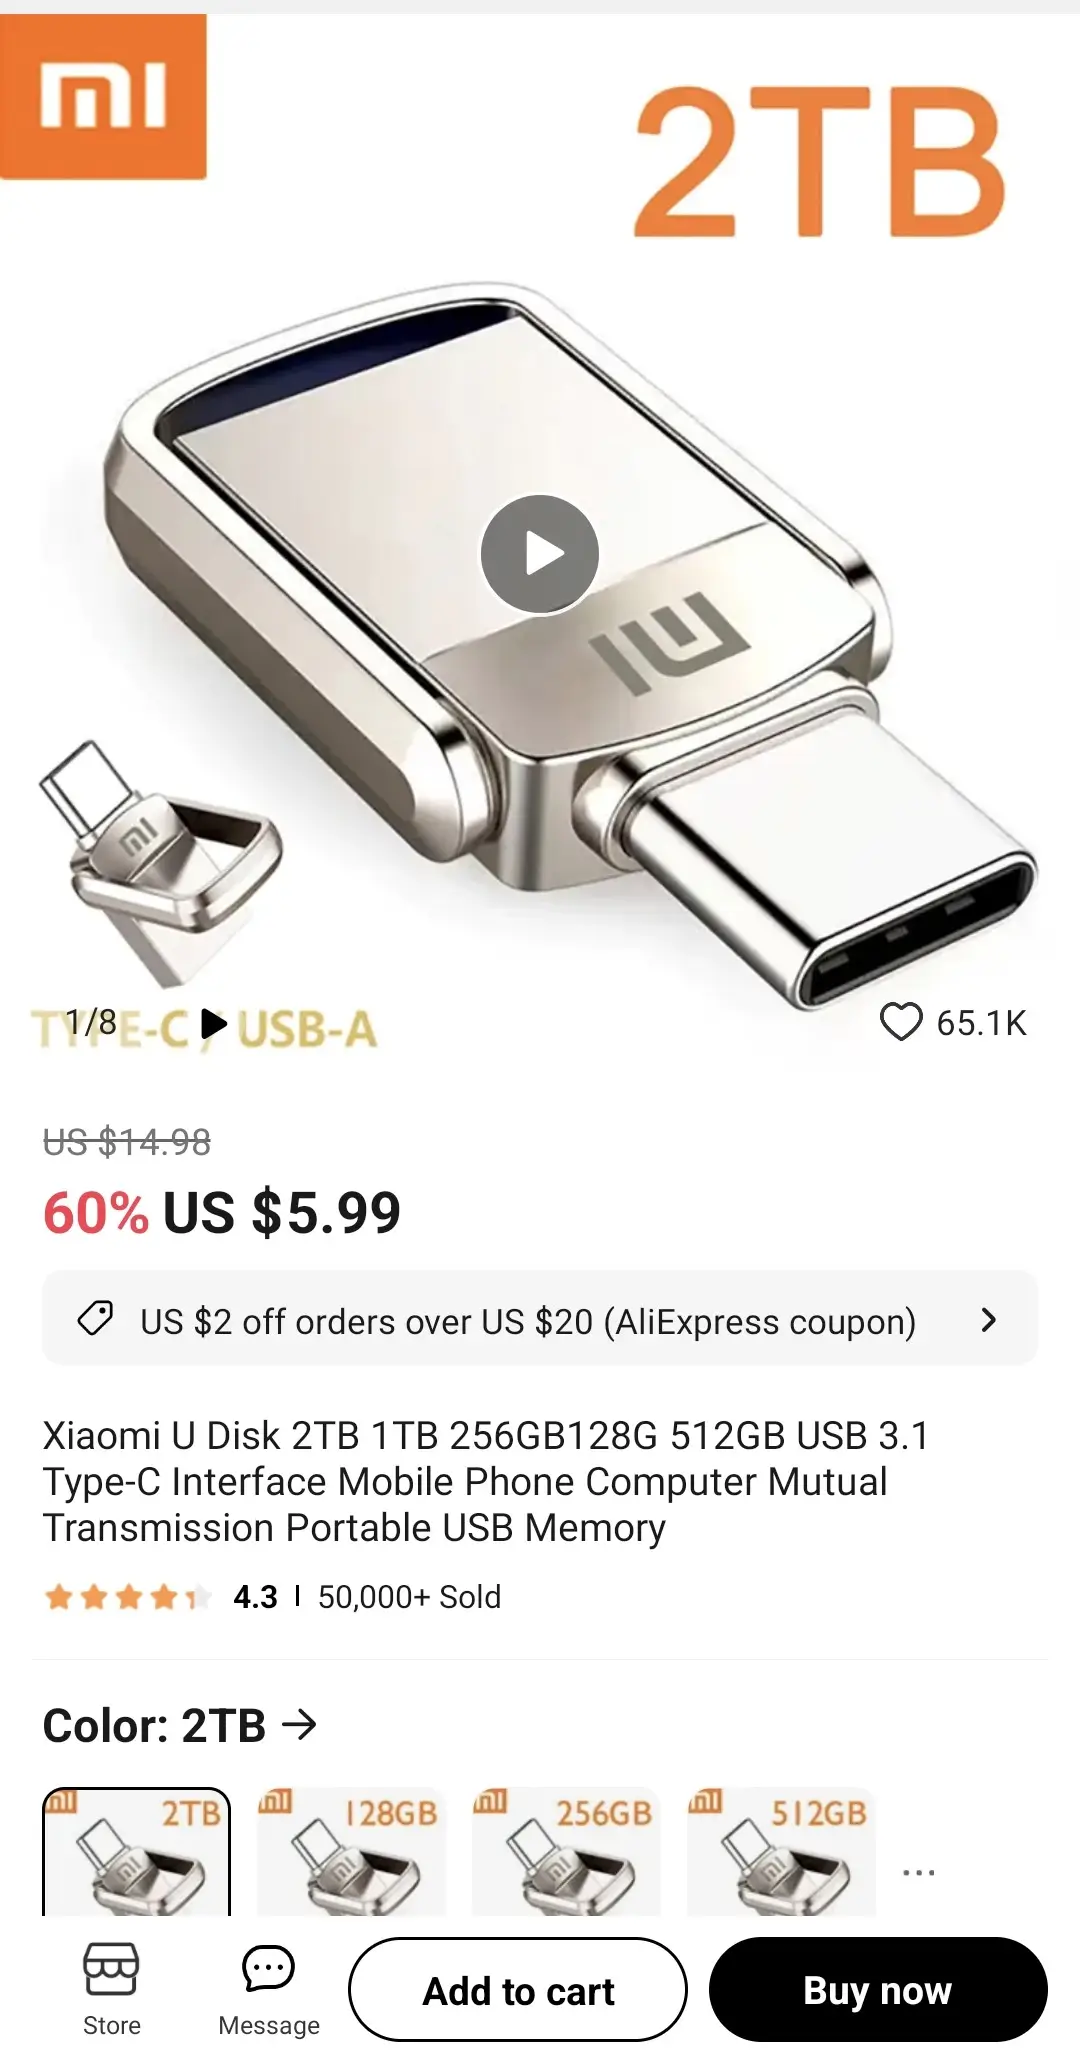 샤오미의 USB 디스크 2T가 보이는 이미지입니다.